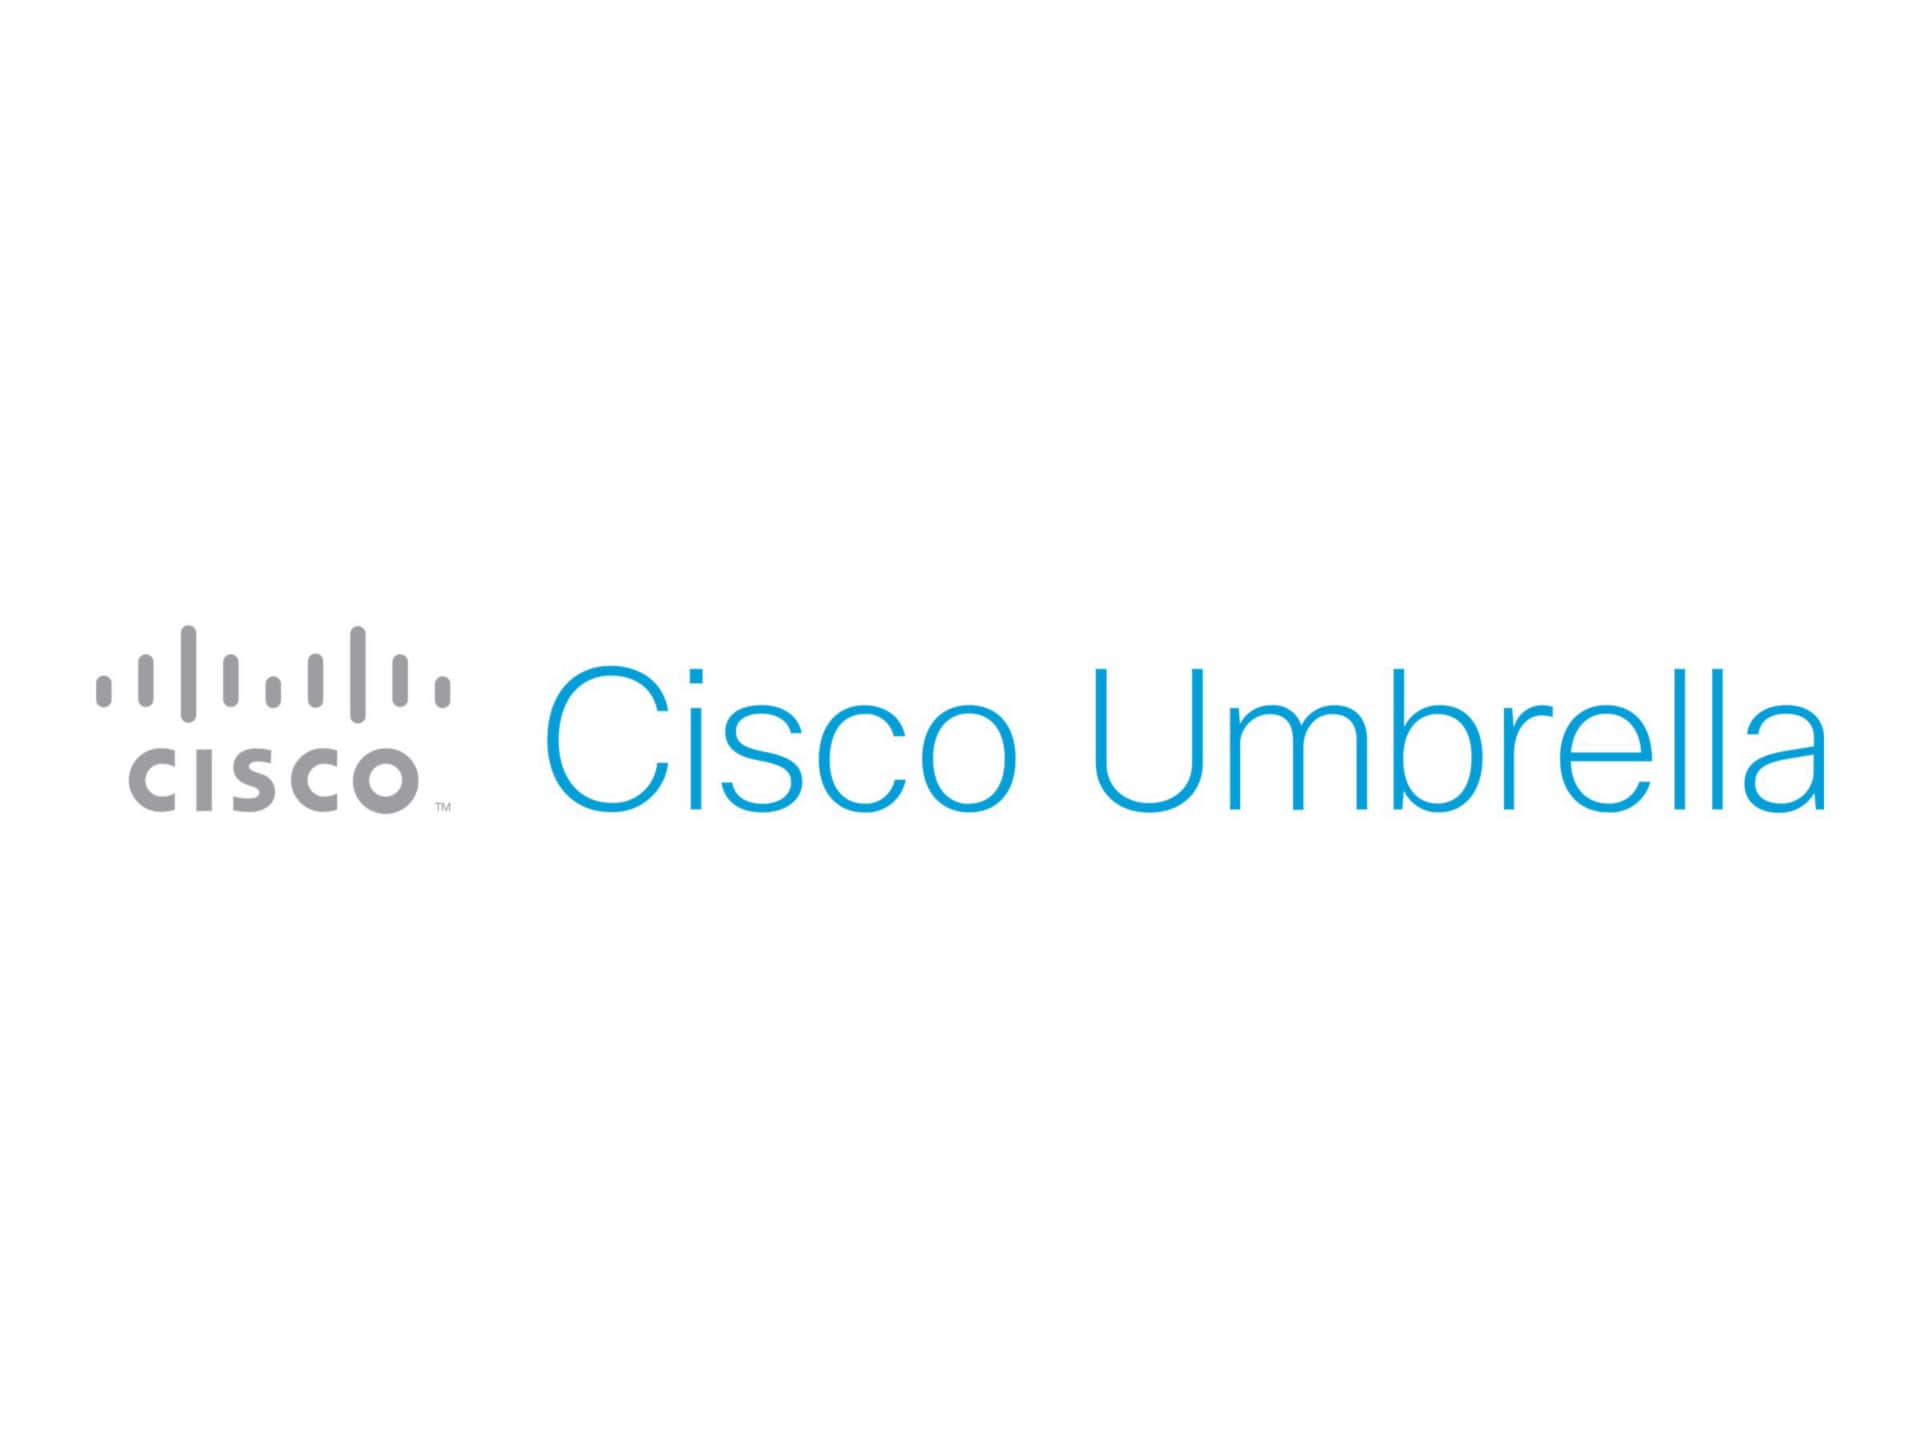 Cisco Umbrella Investigate Console and API - Medium - Term License - 1 license